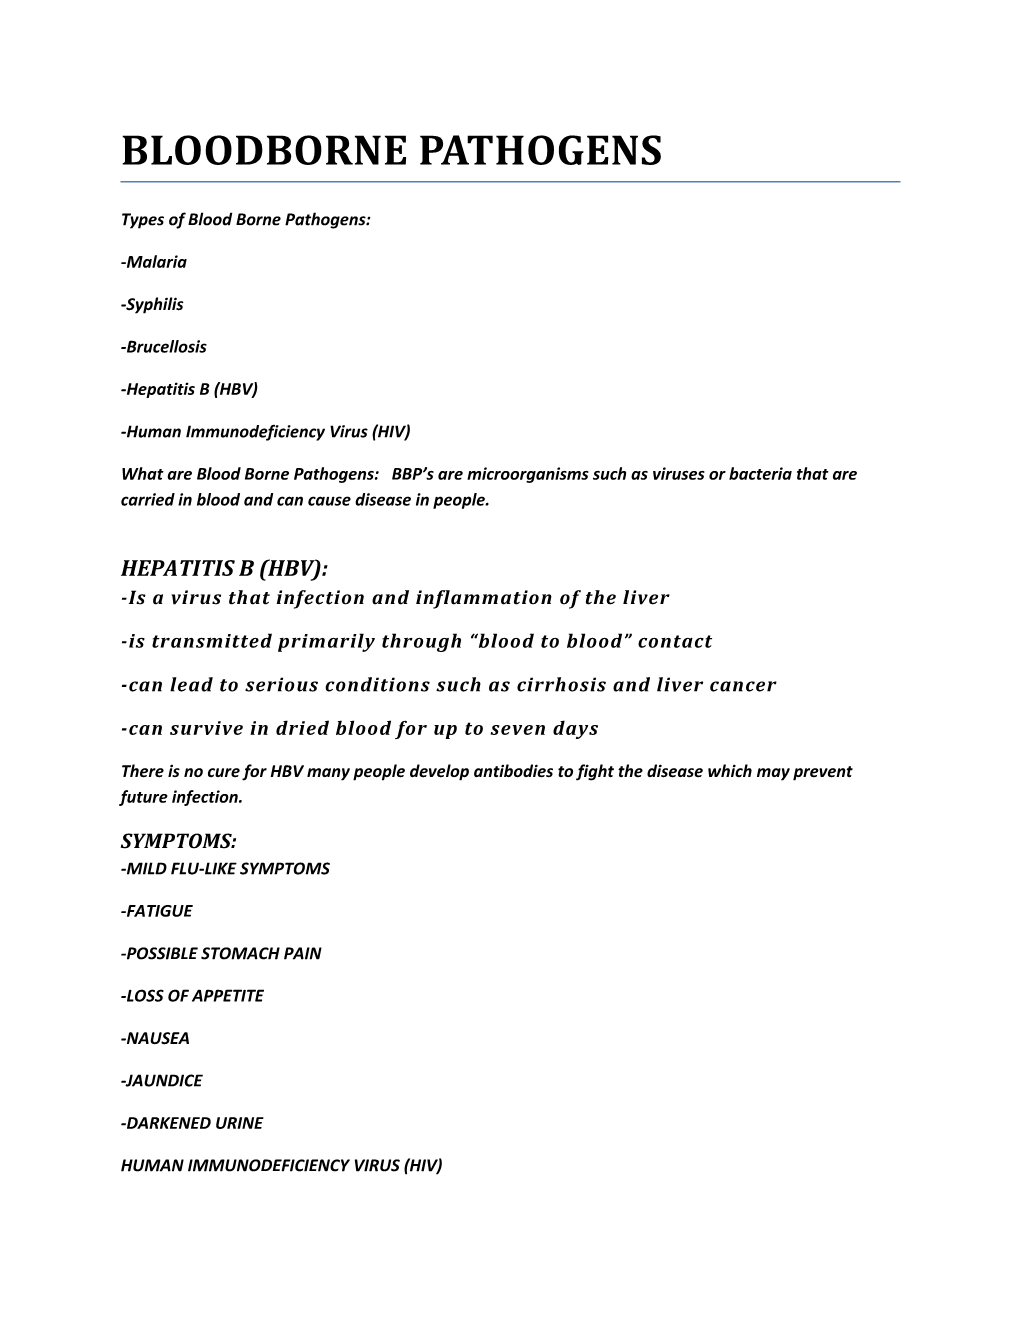 Types of Bloodborne Pathogens